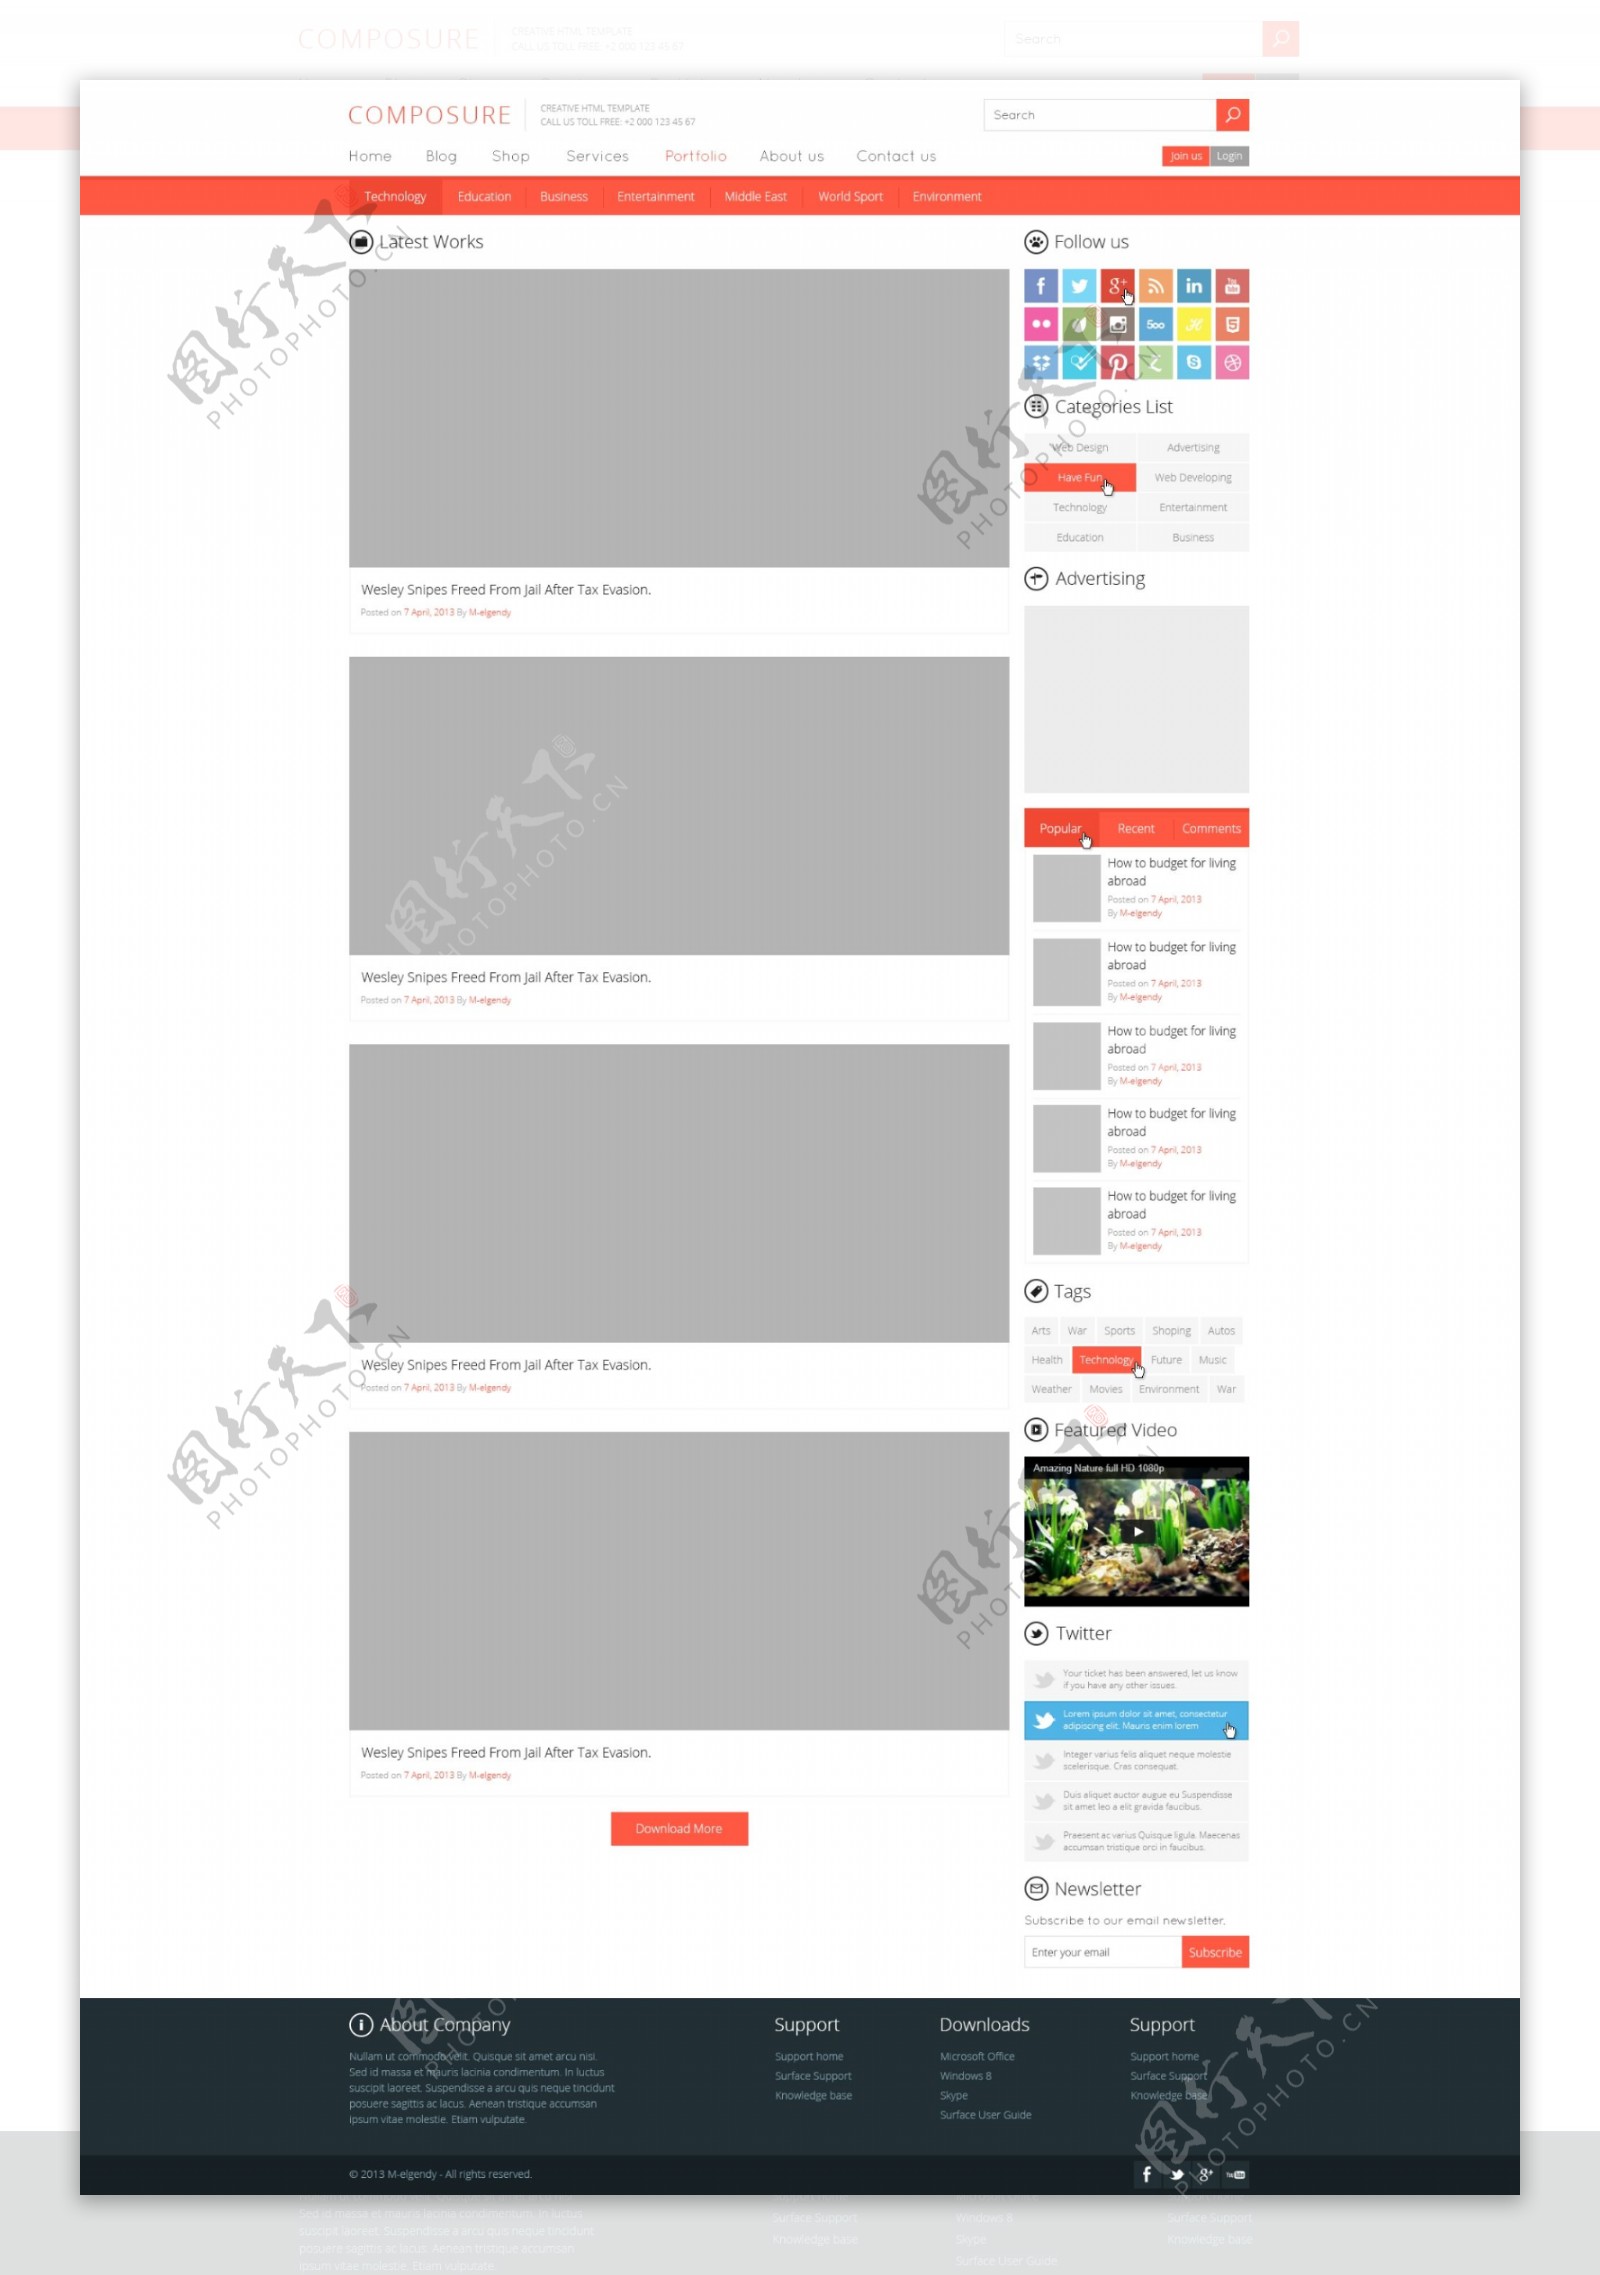 网页列表页面设计模板